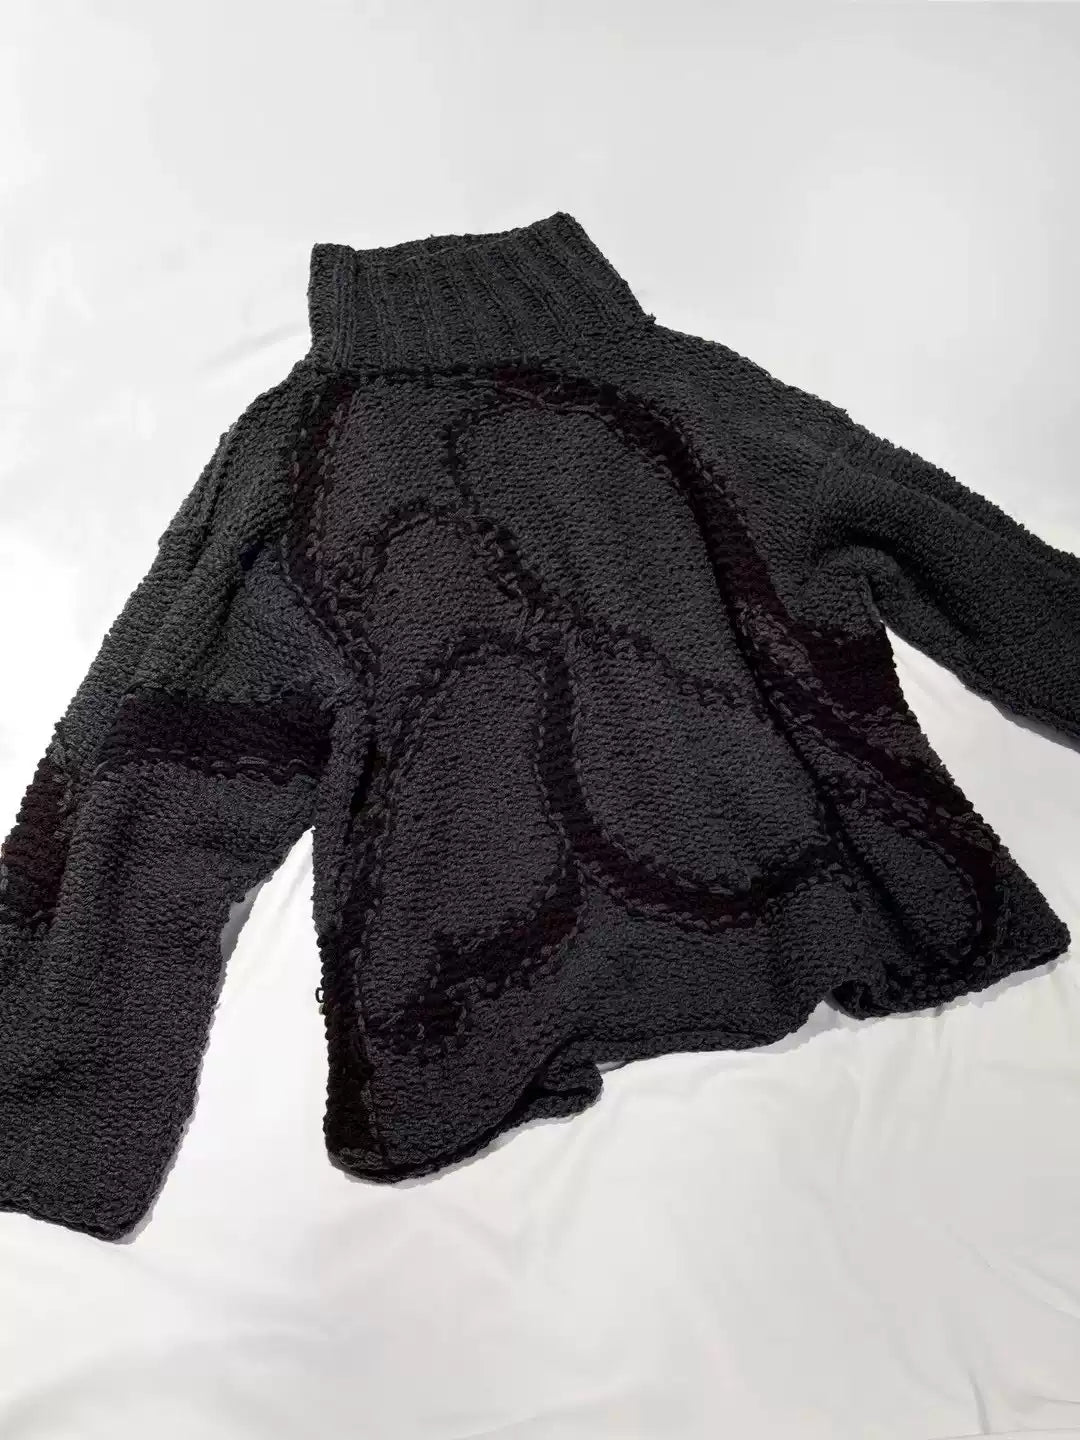 Yohji Yamamoto 84aw Show Knit Sweater